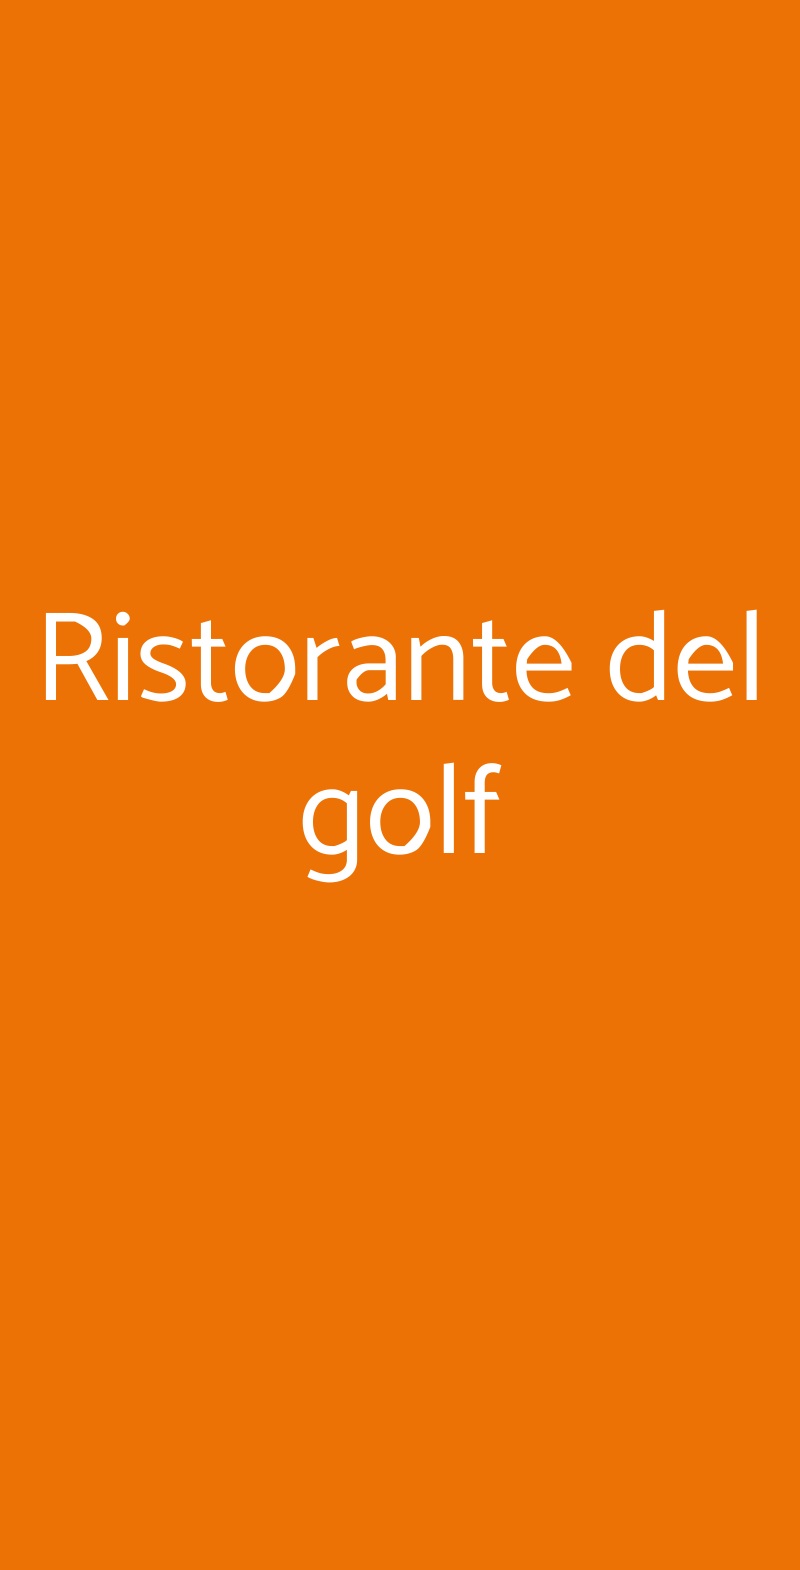 Ristorante del golf Acqui Terme menù 1 pagina